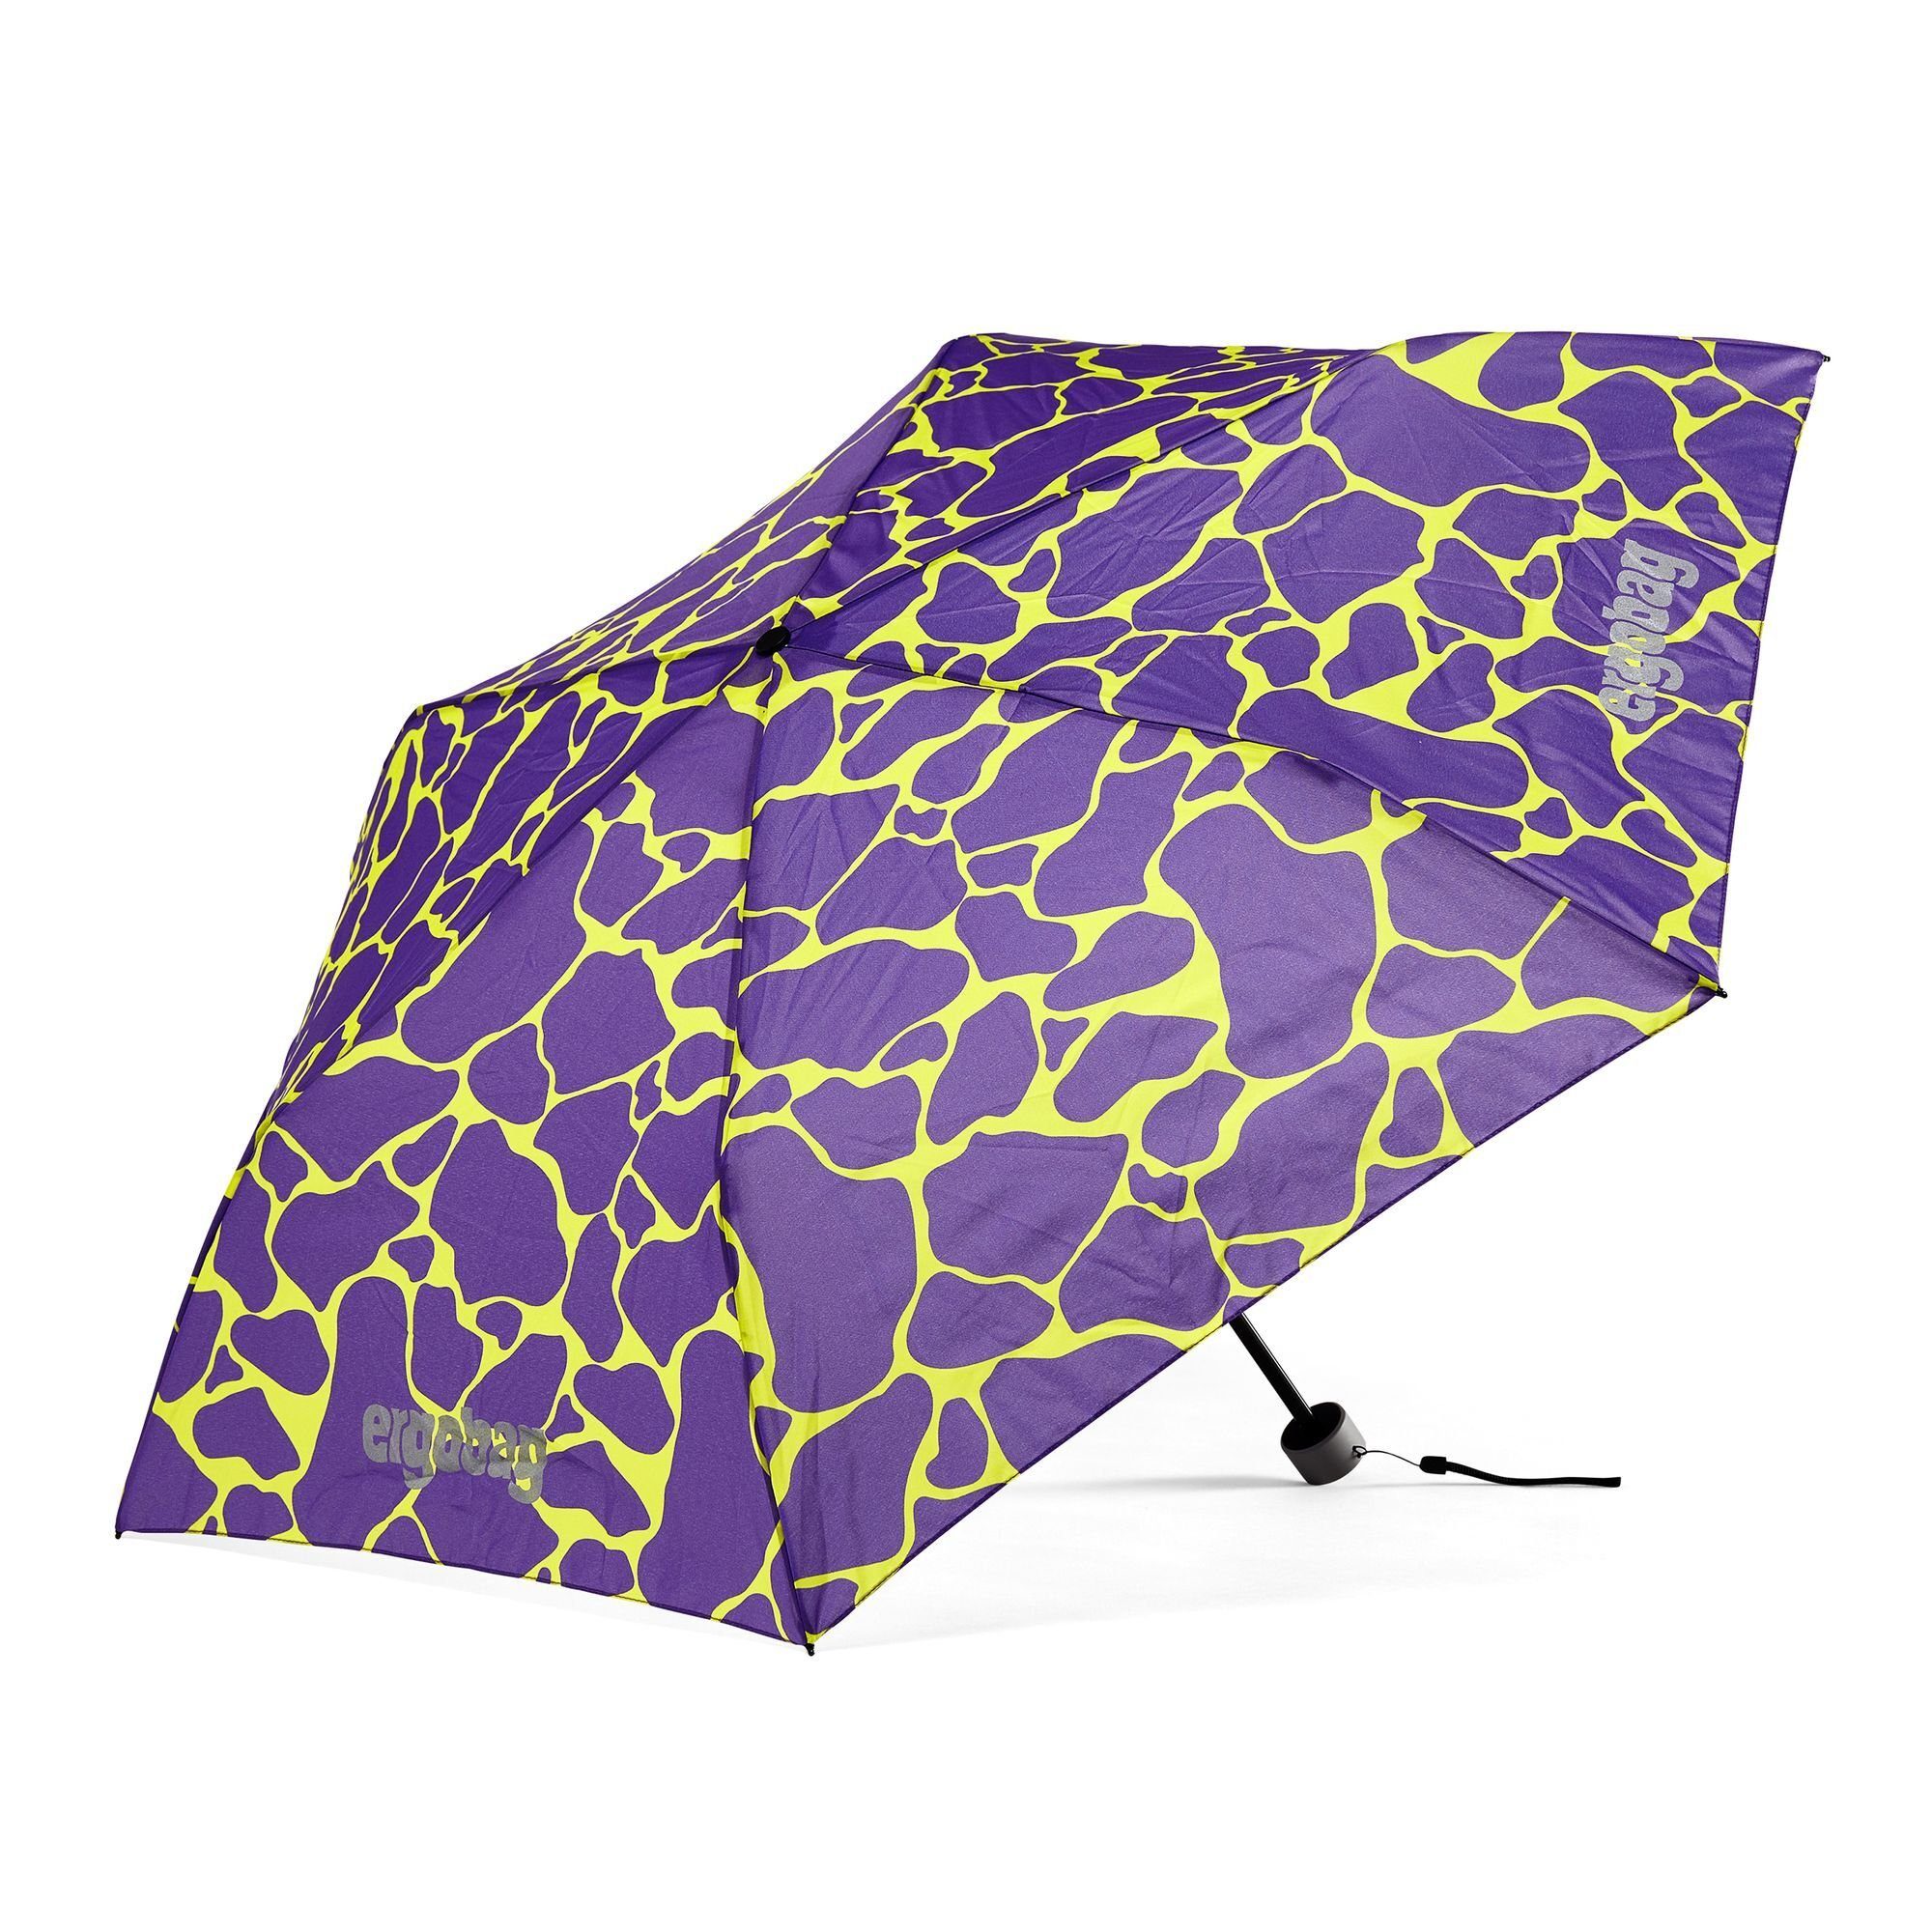 Lila Regenschirme online kaufen | OTTO